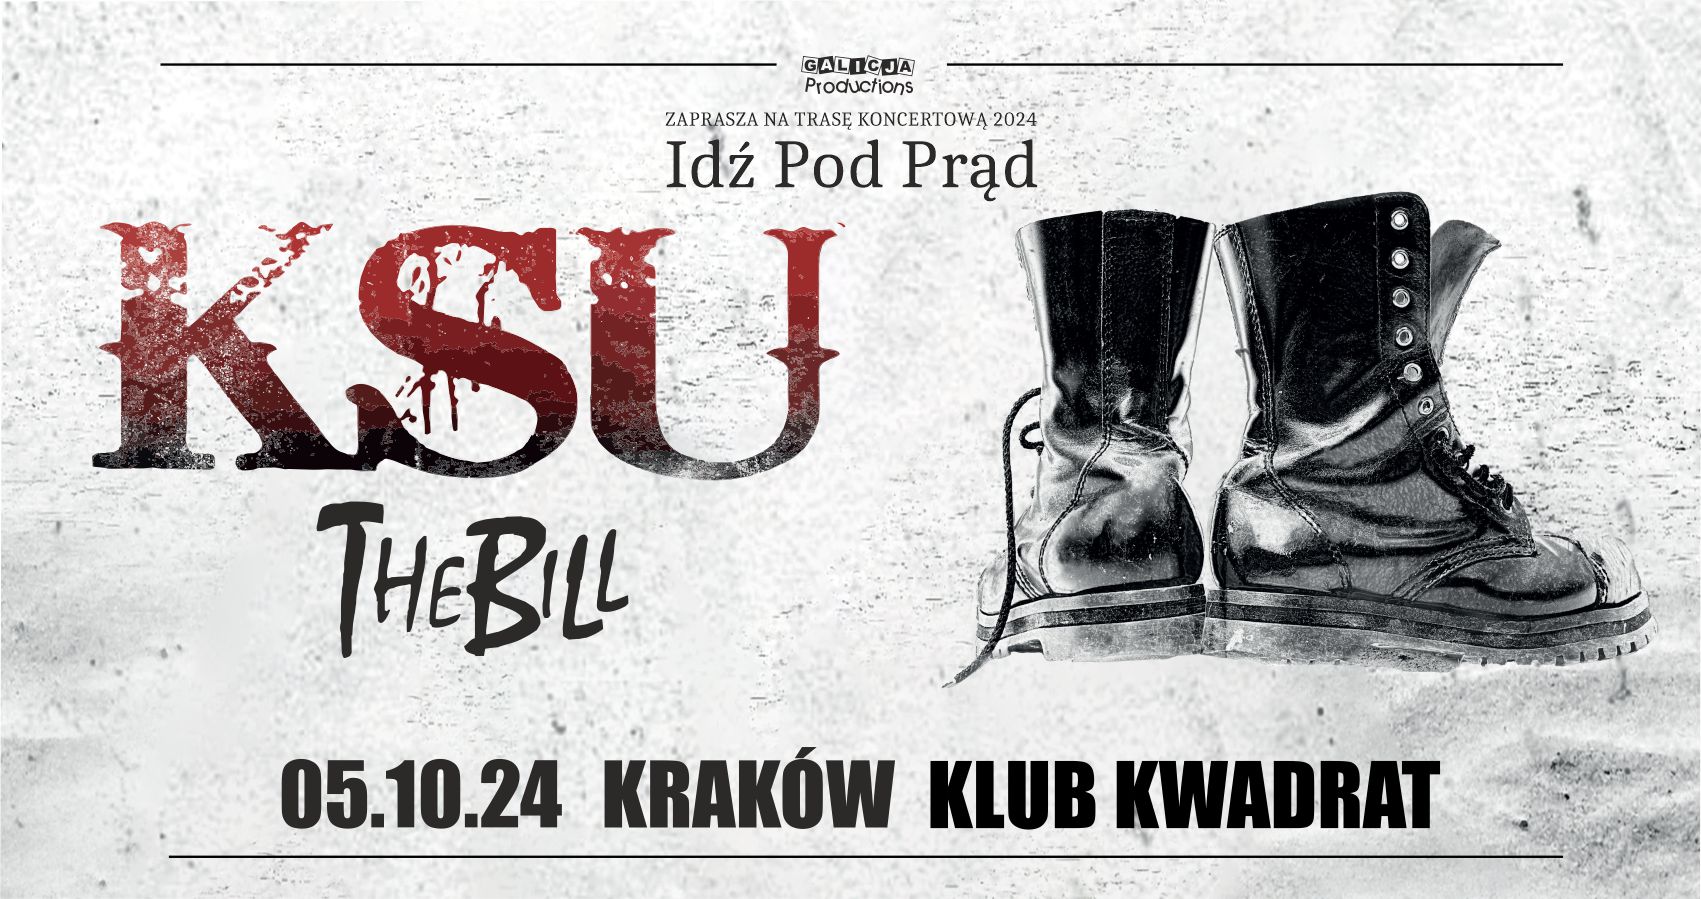 Trasa Idź Pod Prąd 2024 - KSU, The Bill Kraków